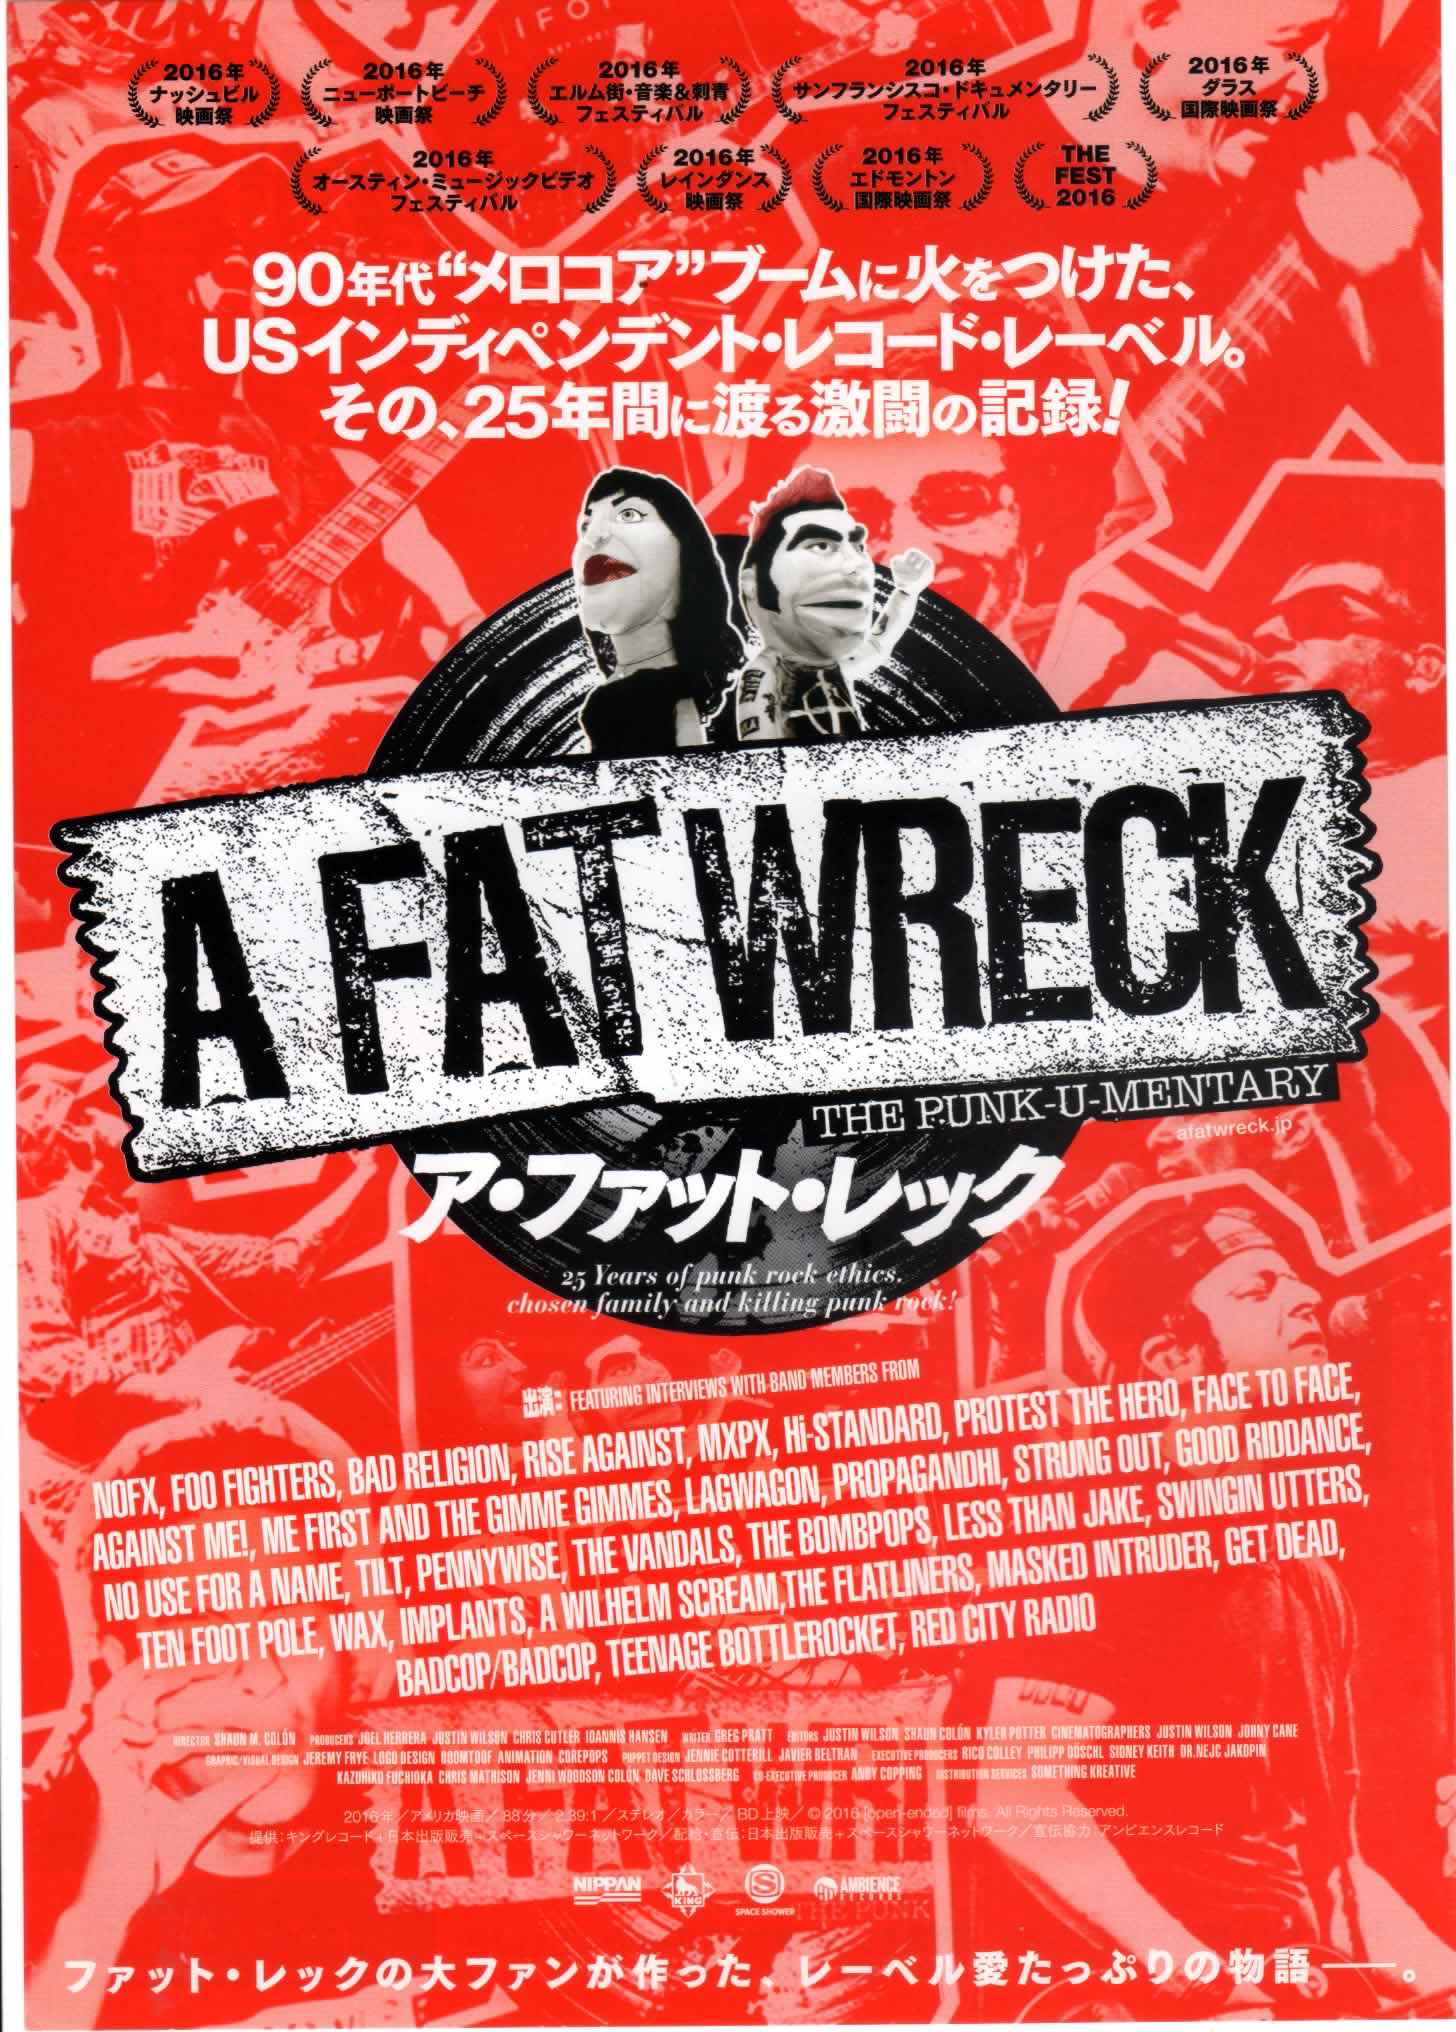 A Fat Wreck (2016) Screenshot 4